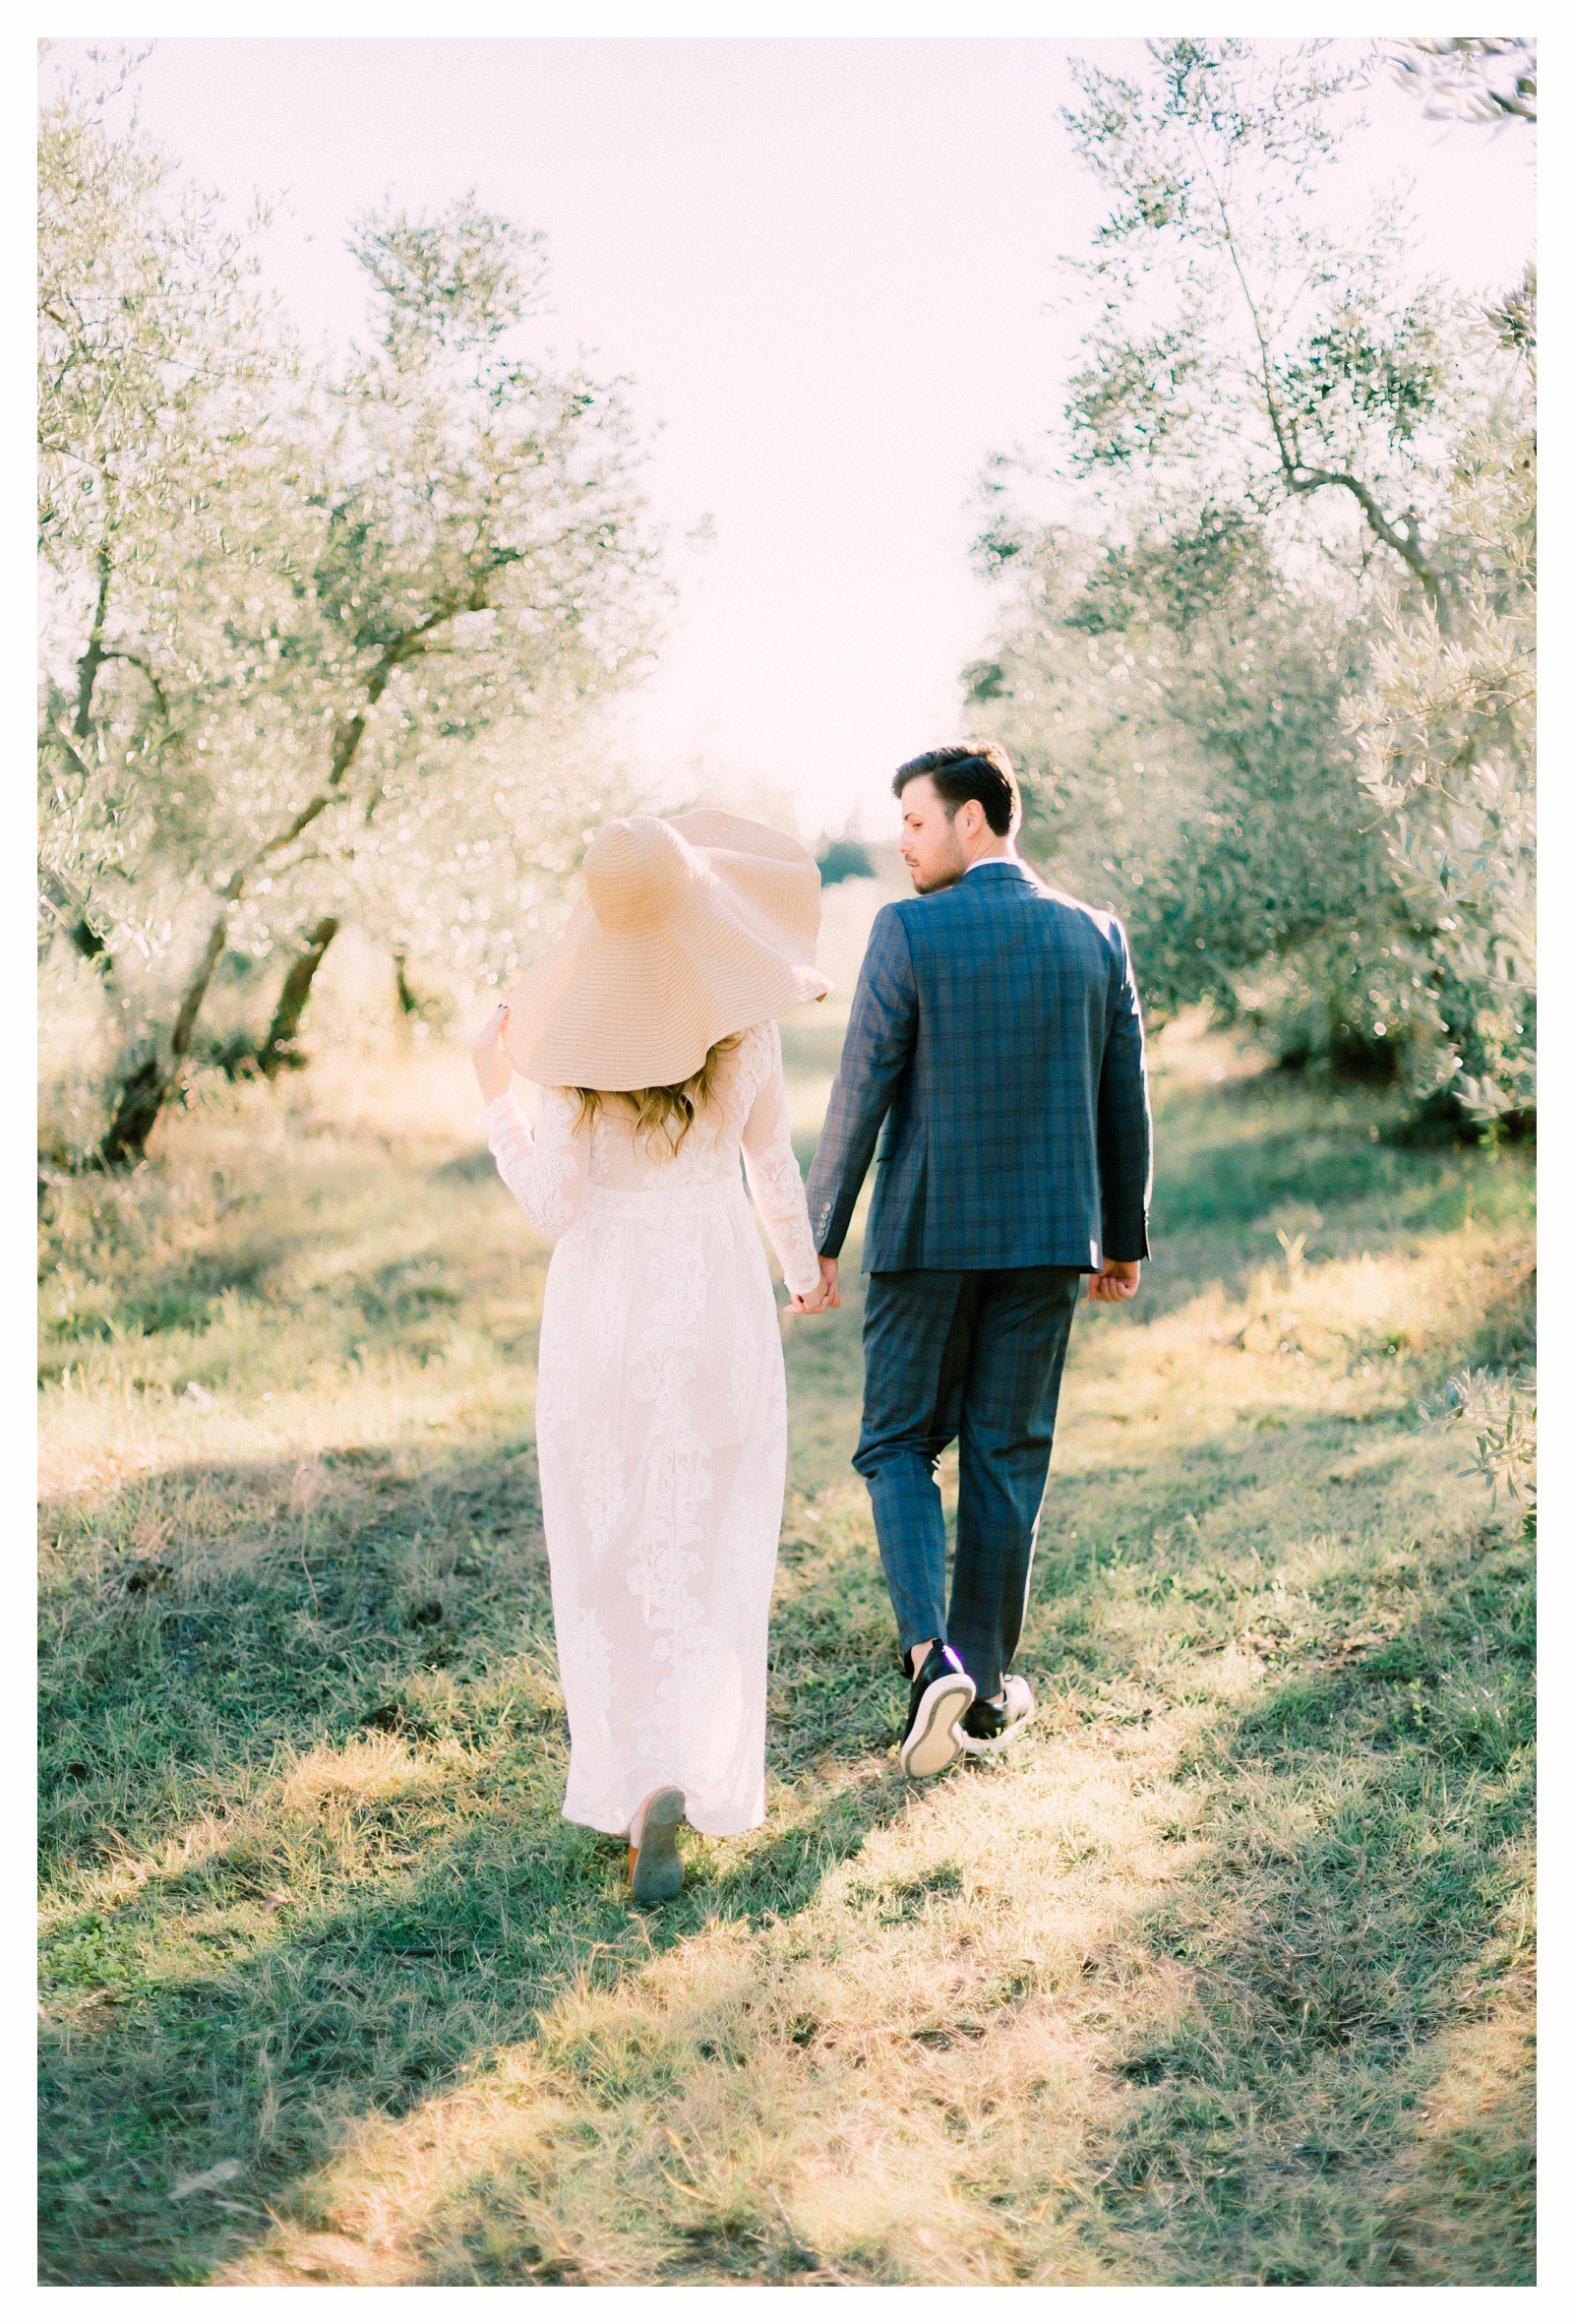 tuscany-countryside-val-dorcia-wedding-couple-photoshoot-photographer_0018.jpg